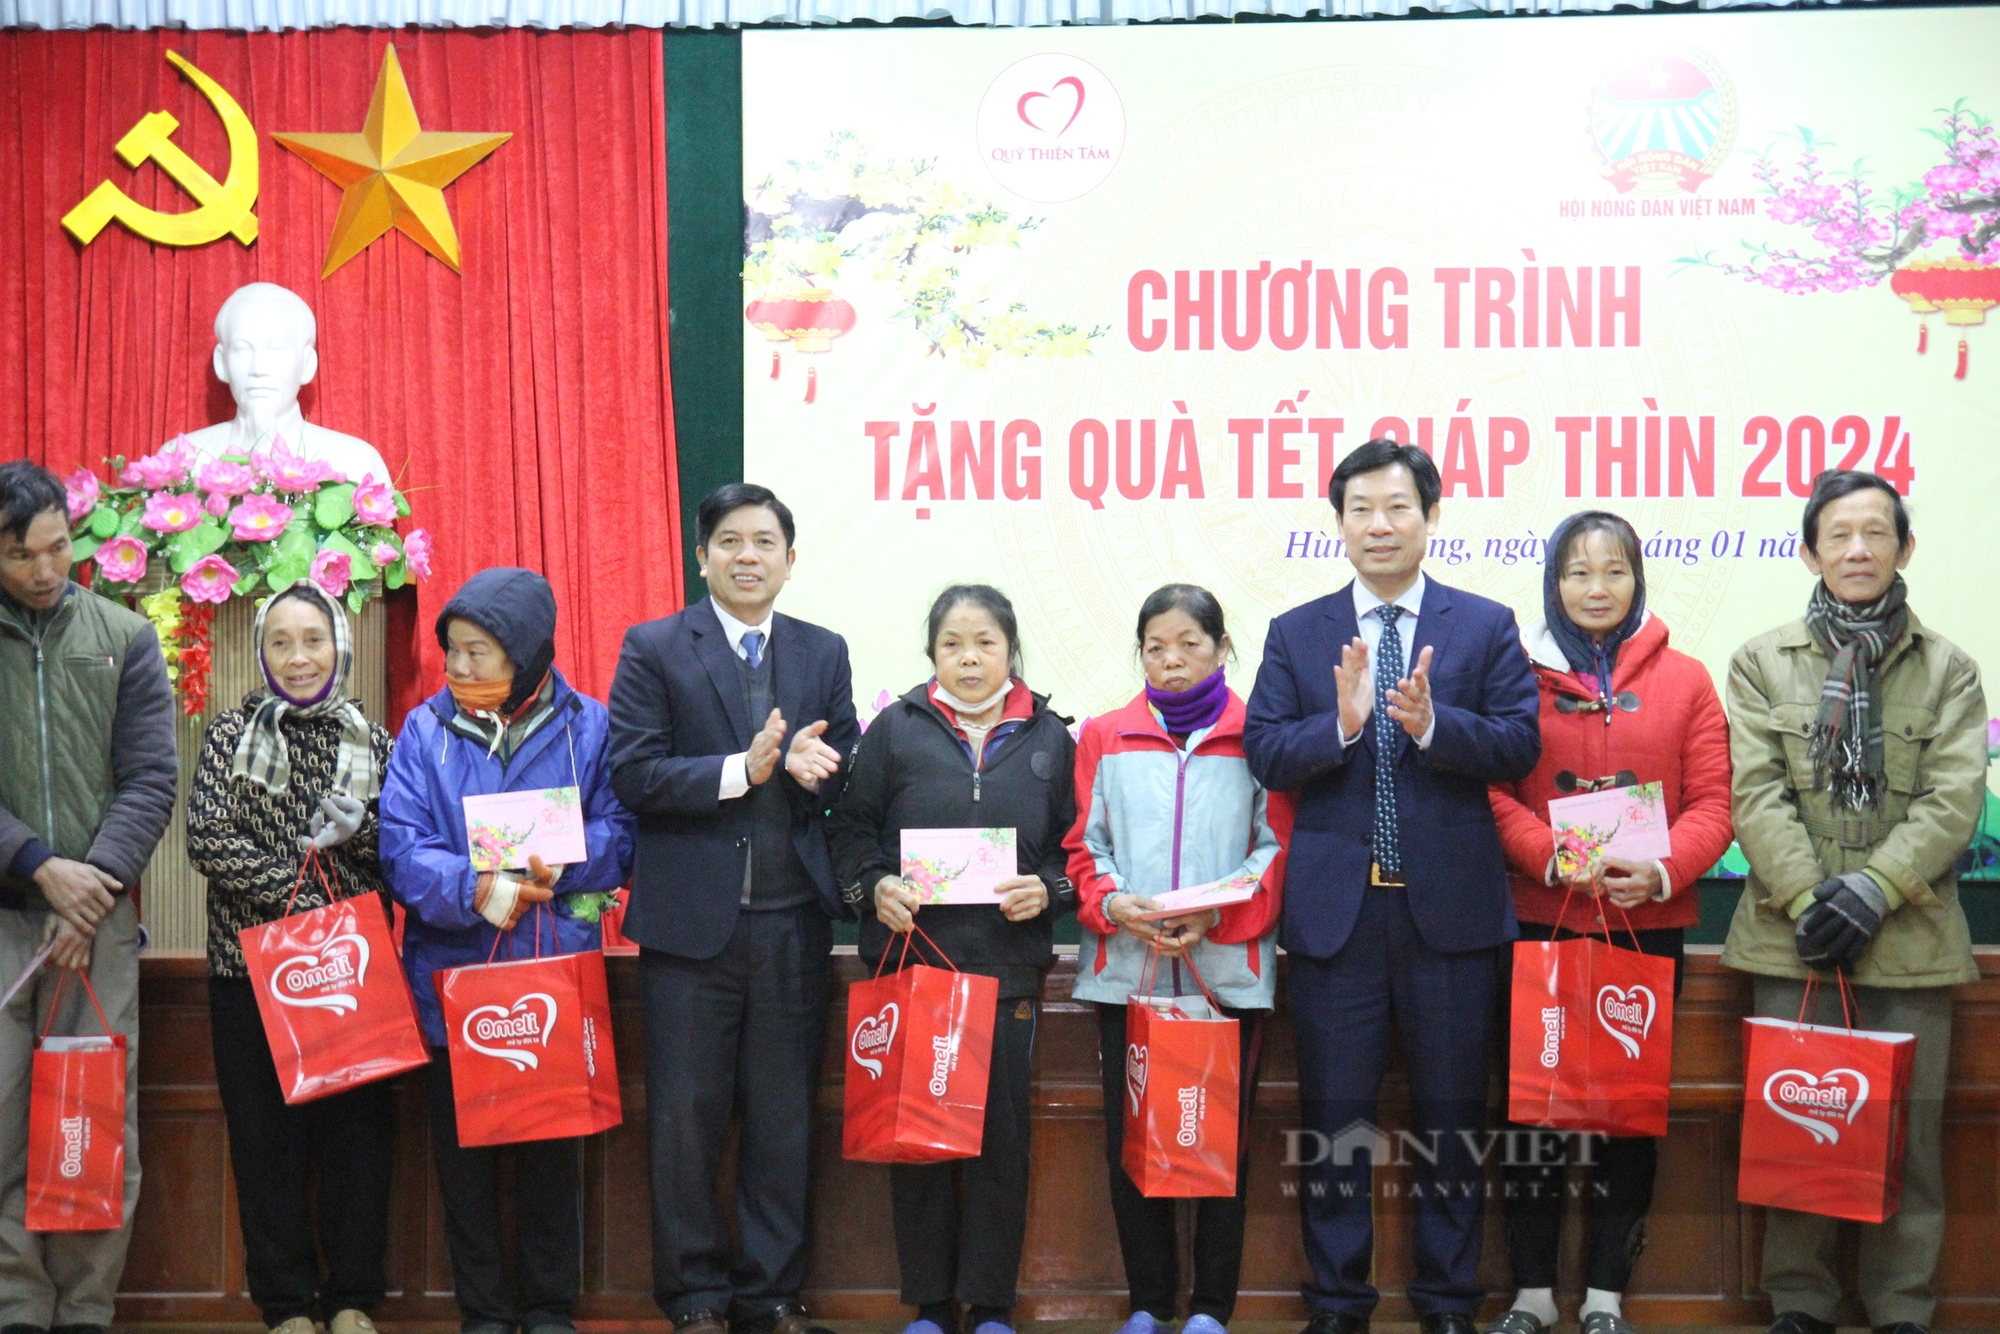 Phó Chủ tịch TƯ Hội NDVN Nguyễn Xuân Định thăm, tặng quà Tết hội viên, nông dân có hoàn cảnh khó khăn ở Thái Bình- Ảnh 10.